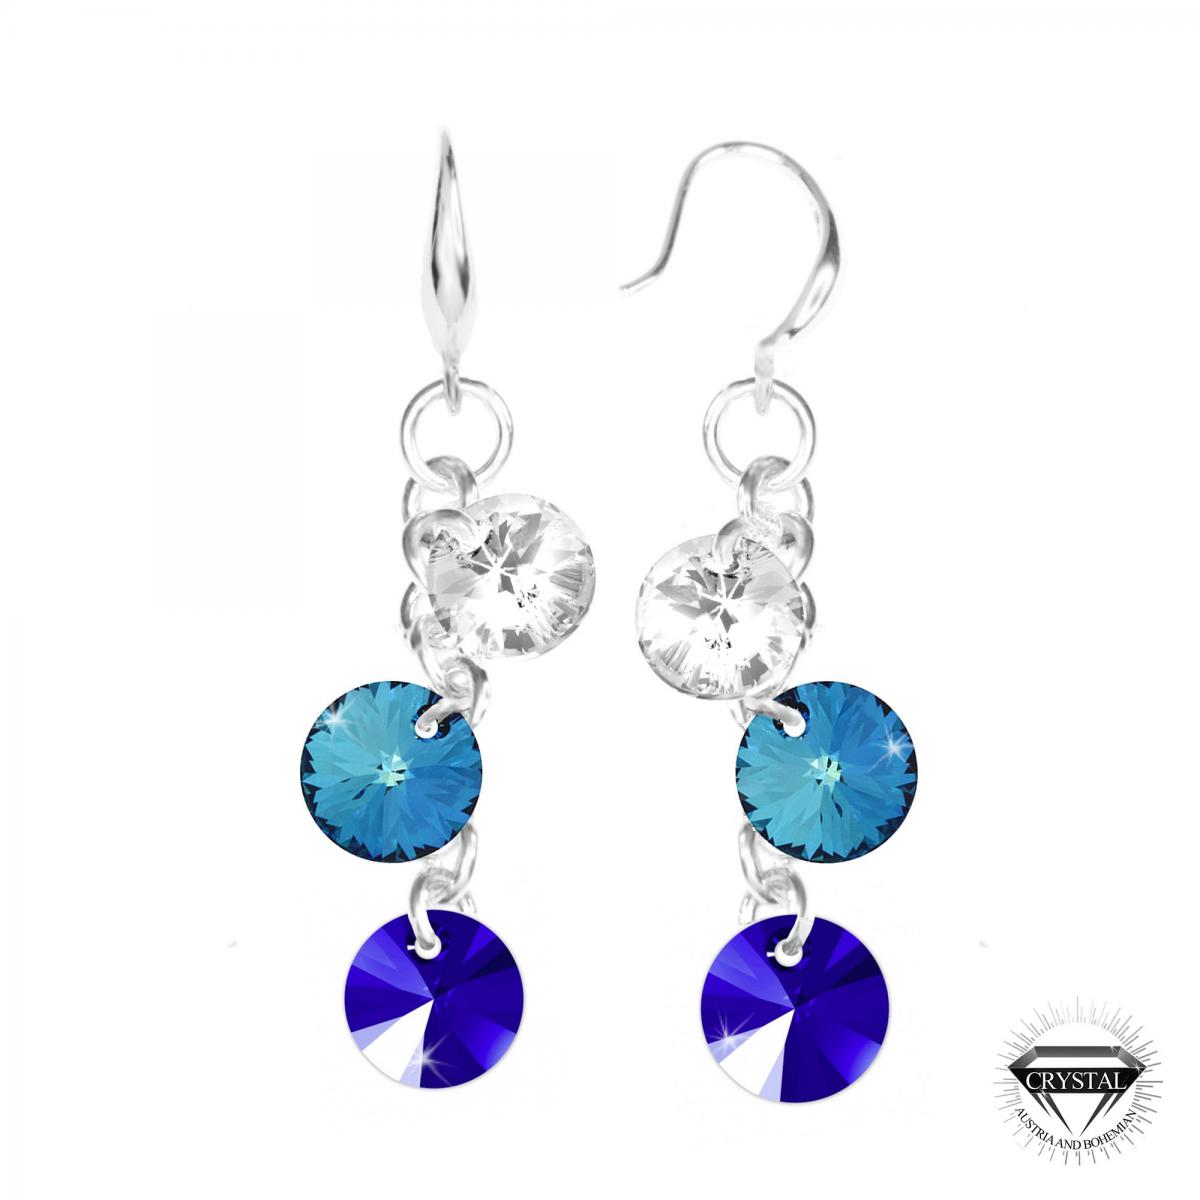 Promo : Boucles d'oreilles So Charm cristal bleu - Boucles d'oreilles Femme